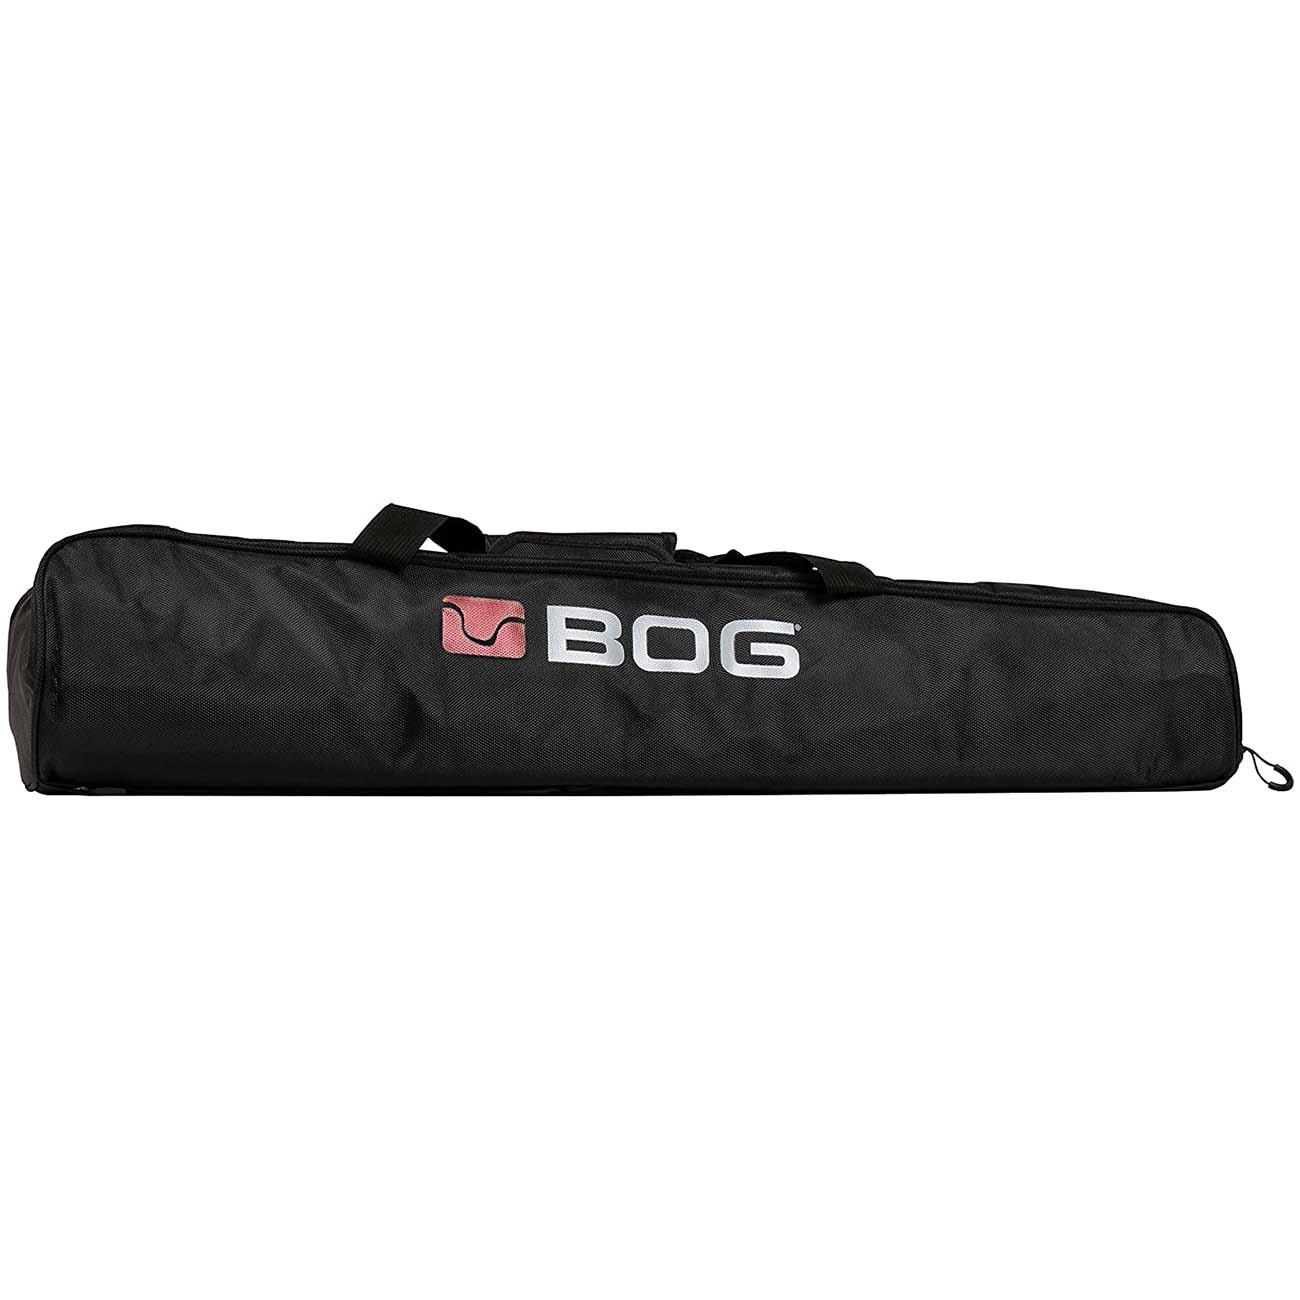 BOG DeathGrip Tripod Padded Carry Bag with Adjustable Shoulder Strap